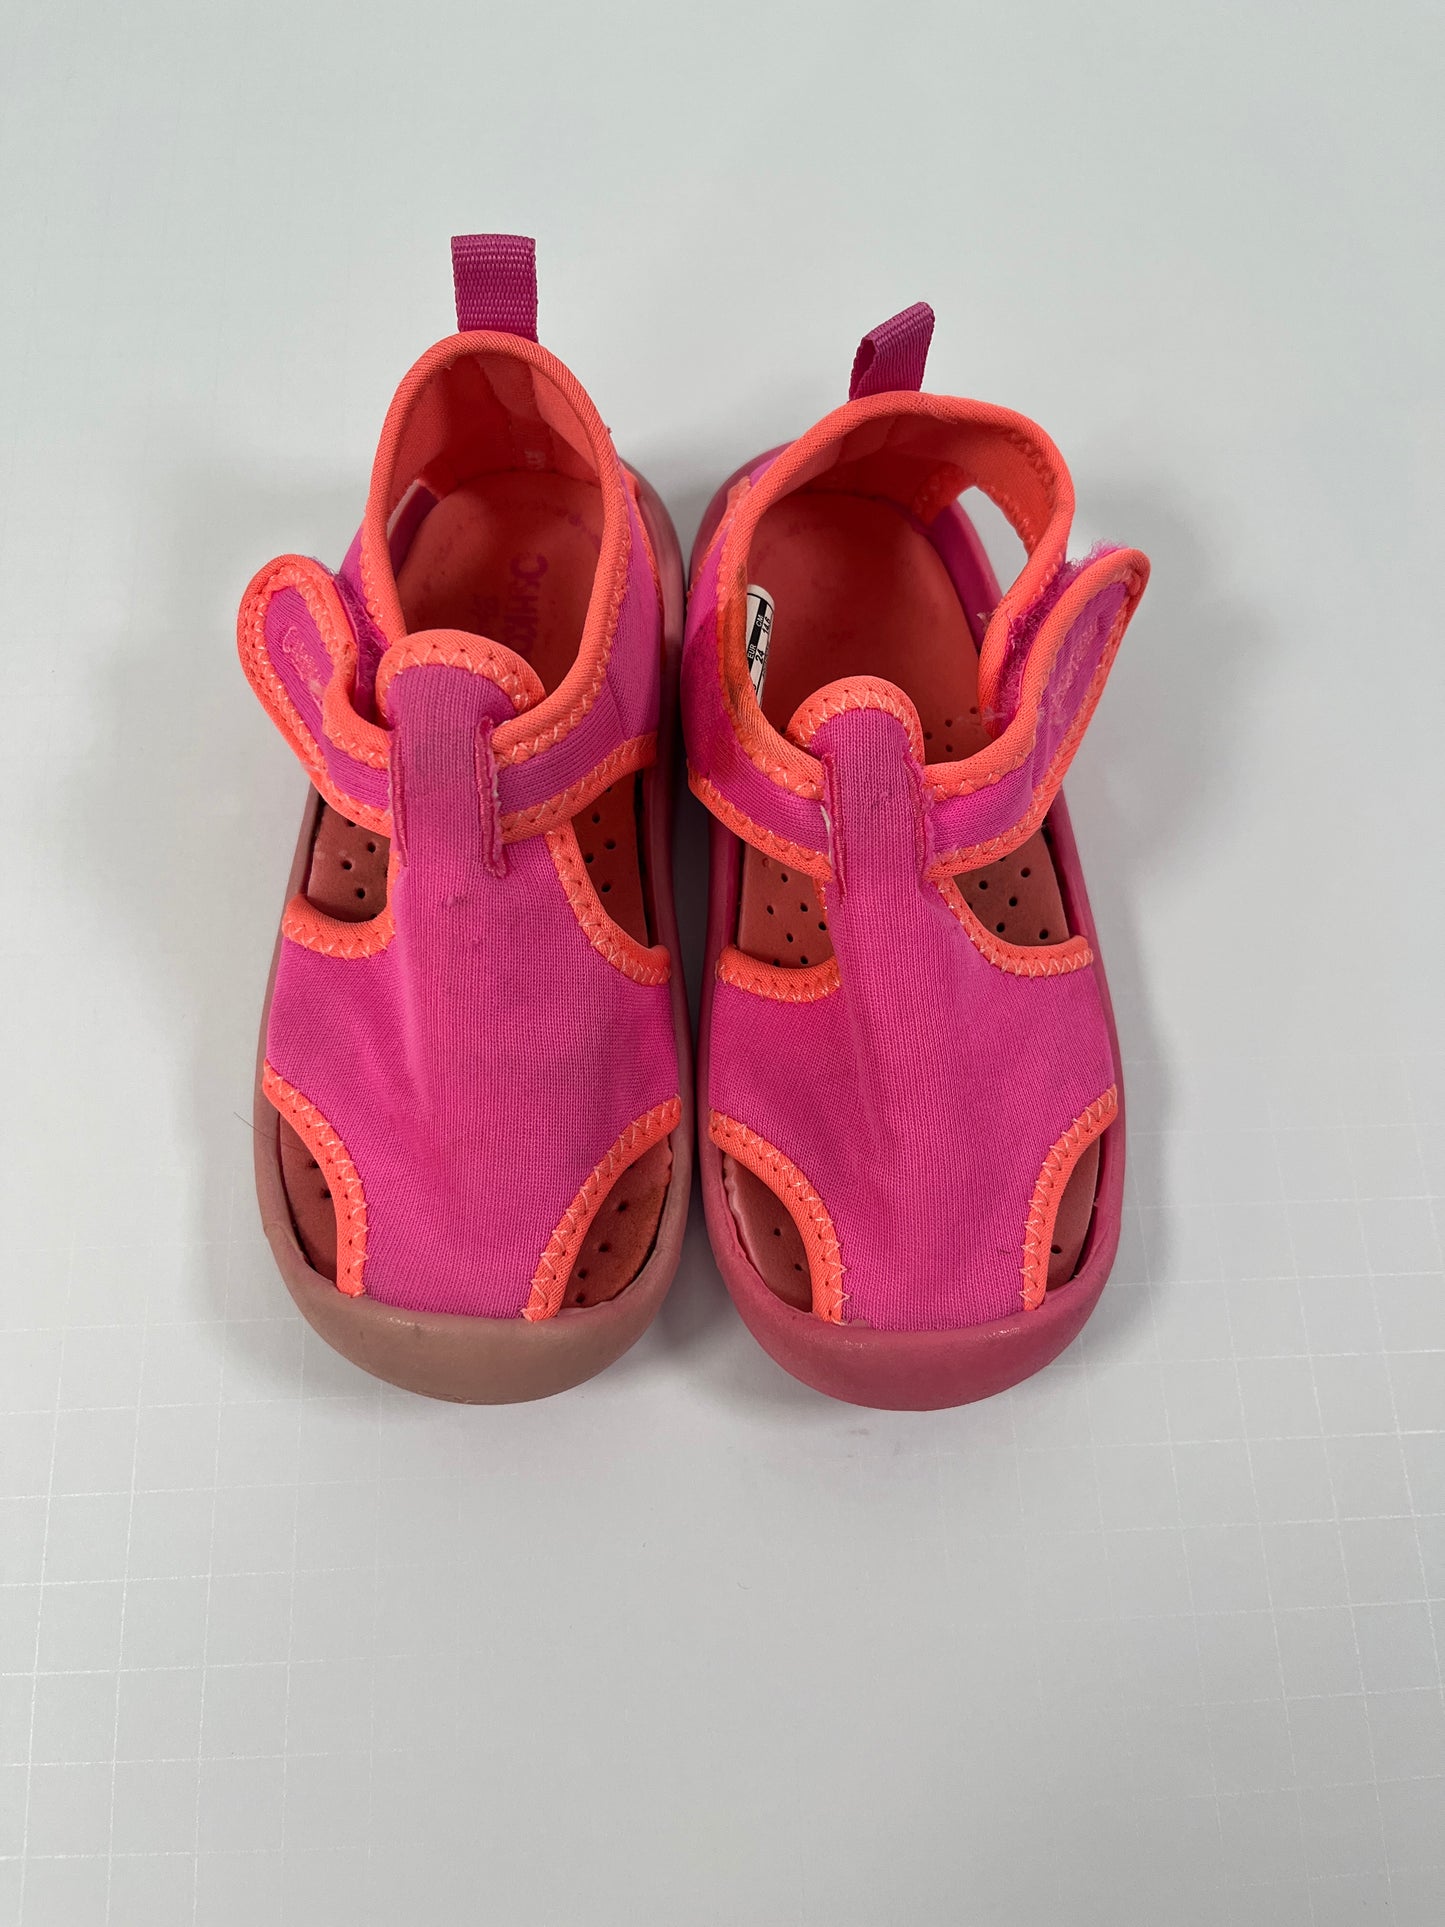 PPU 45242 Osh Kosh size 8 pink water shoes 